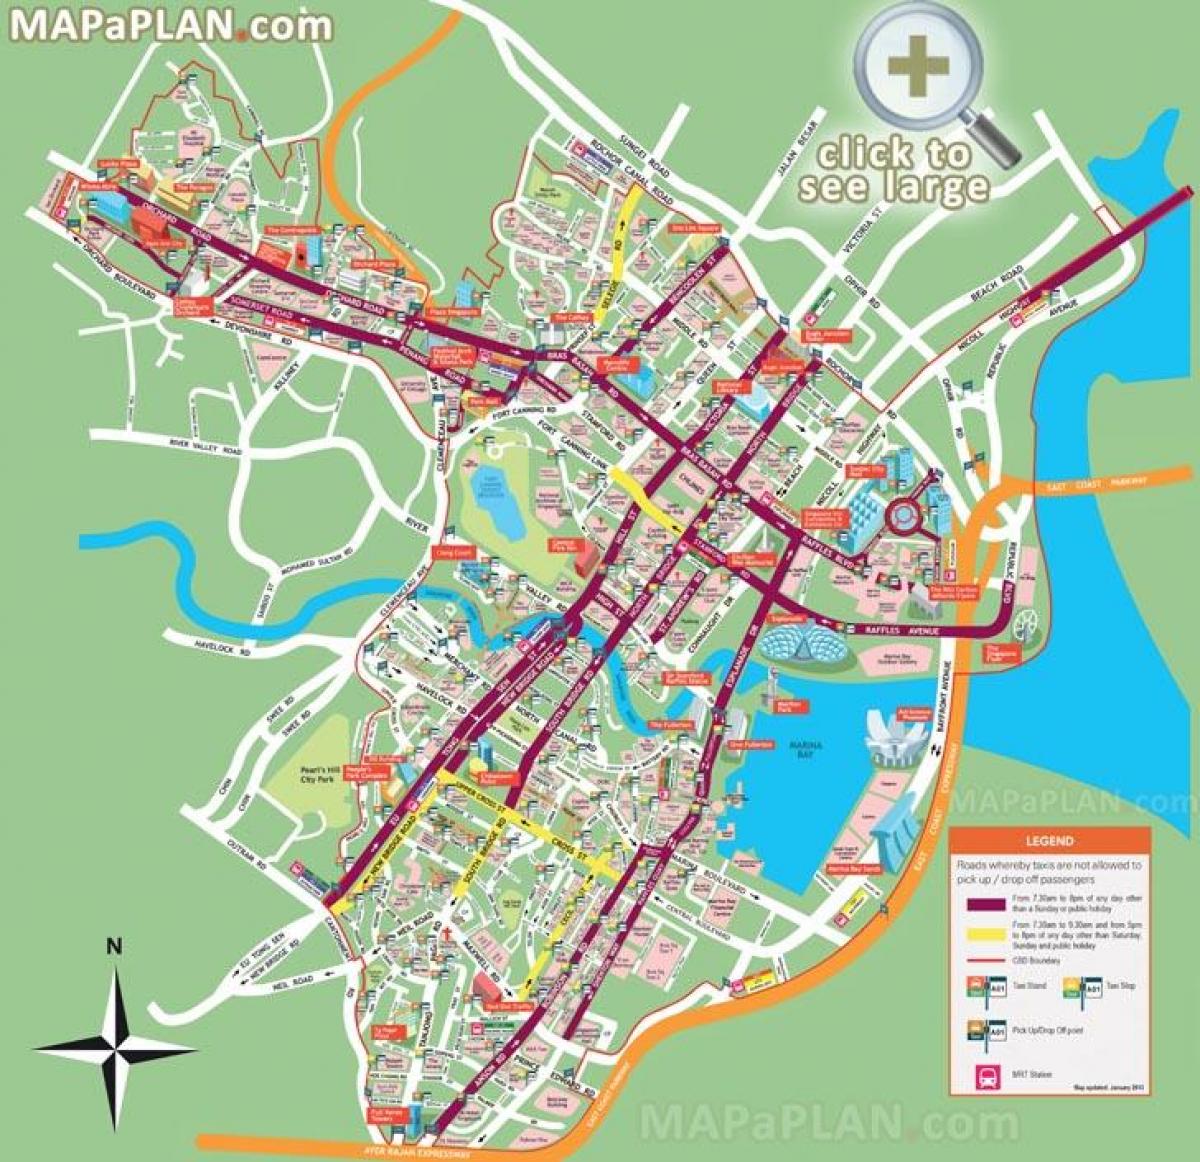 Singapore turistikohteet kartta